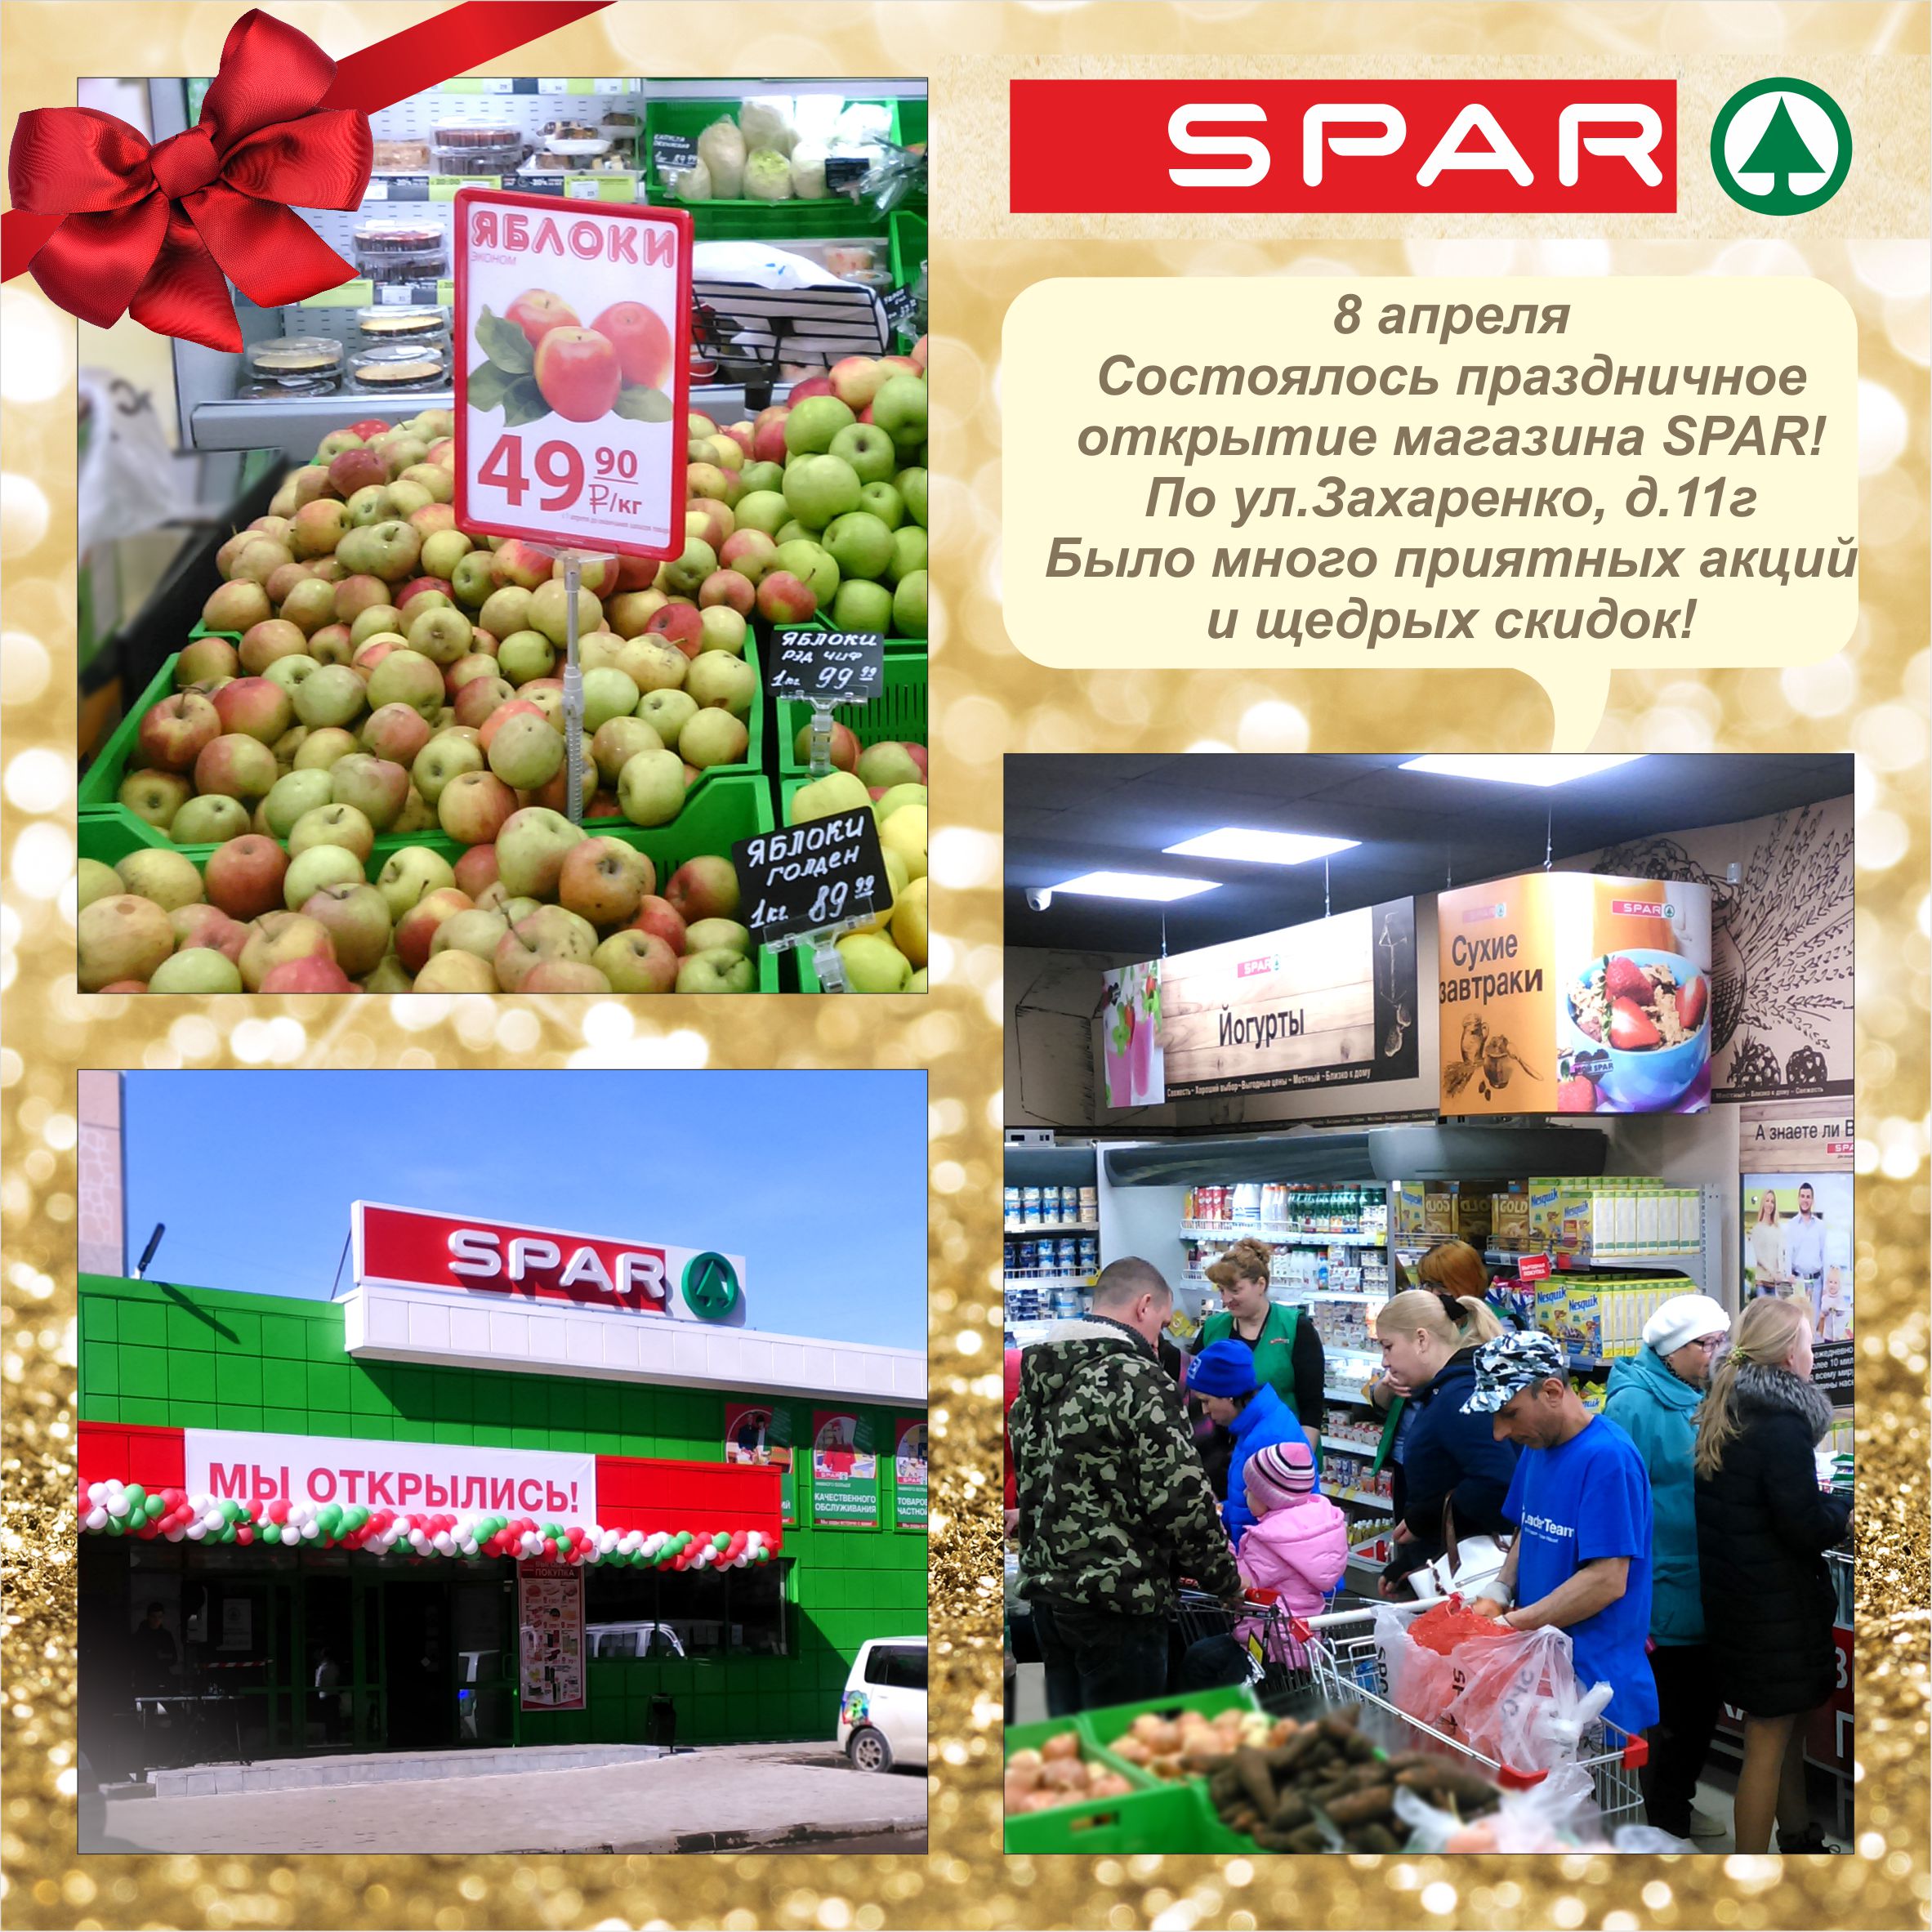  Состоялось праздничное открытие  магазина SPAR!!!